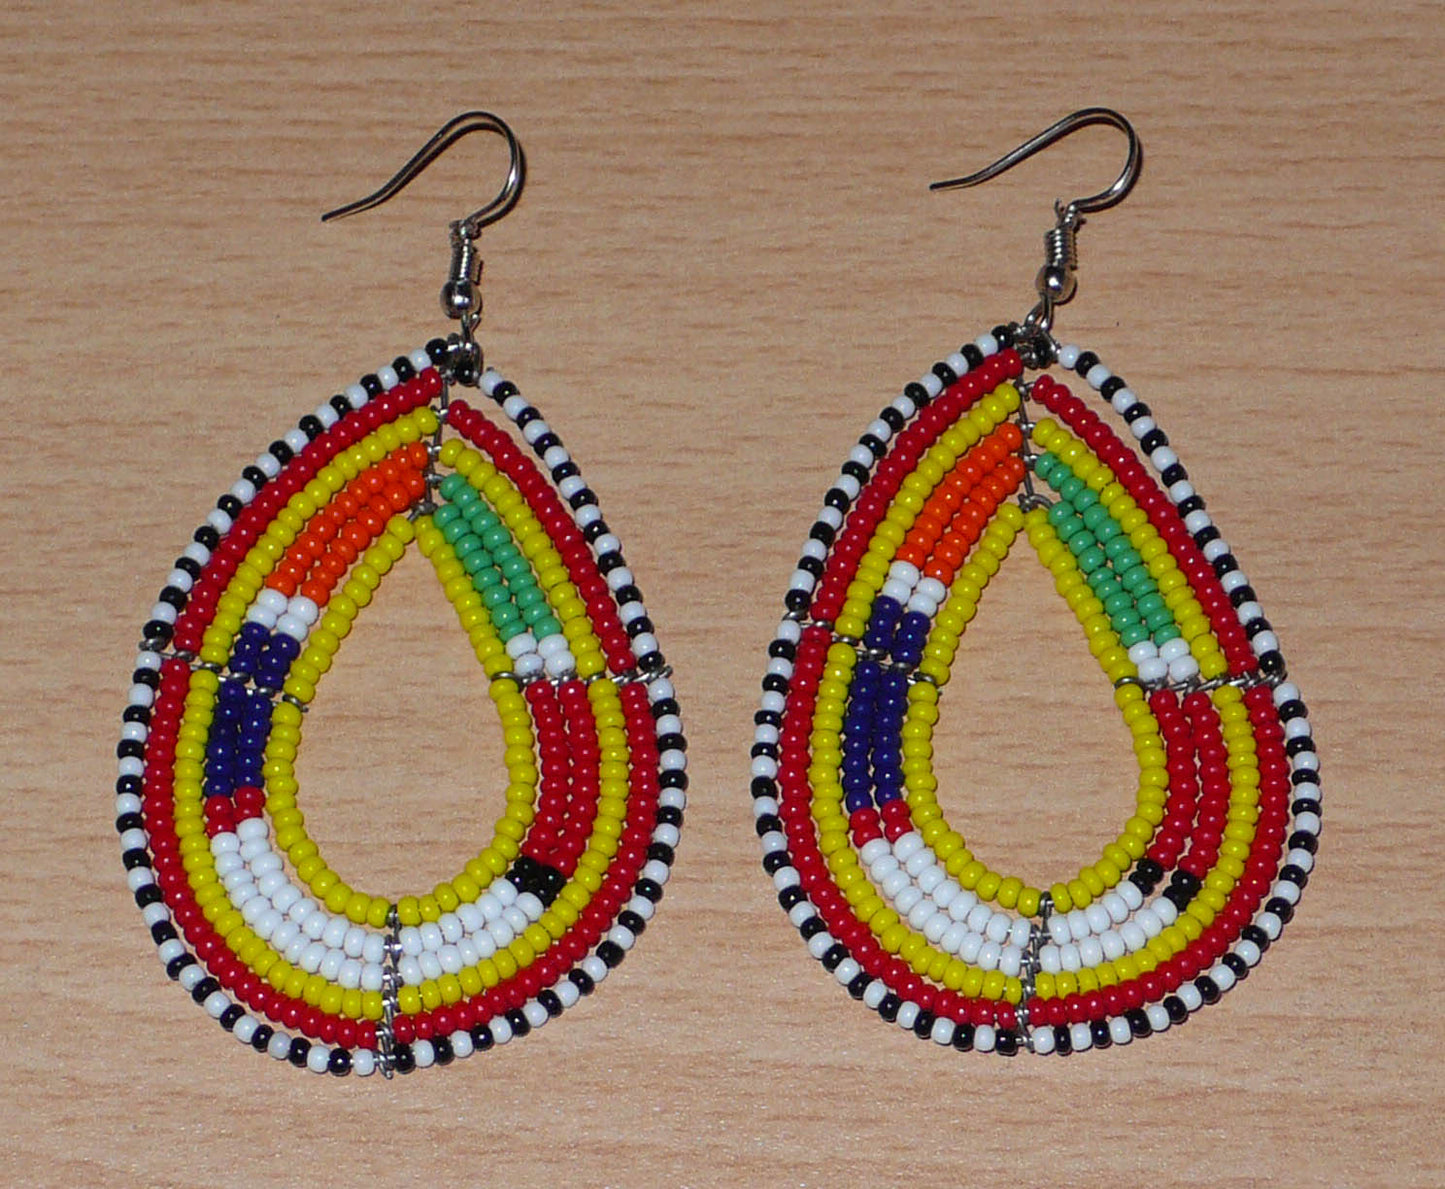 Boucles d'oreilles africaines Massai en perles de rocaille jaunes et multicolores montées en forme de gouttes. Elles mesurent 8 cm de long et 4 cm de large et se portent avec des crochets en acier inoxydable sur des oreilles percées. 